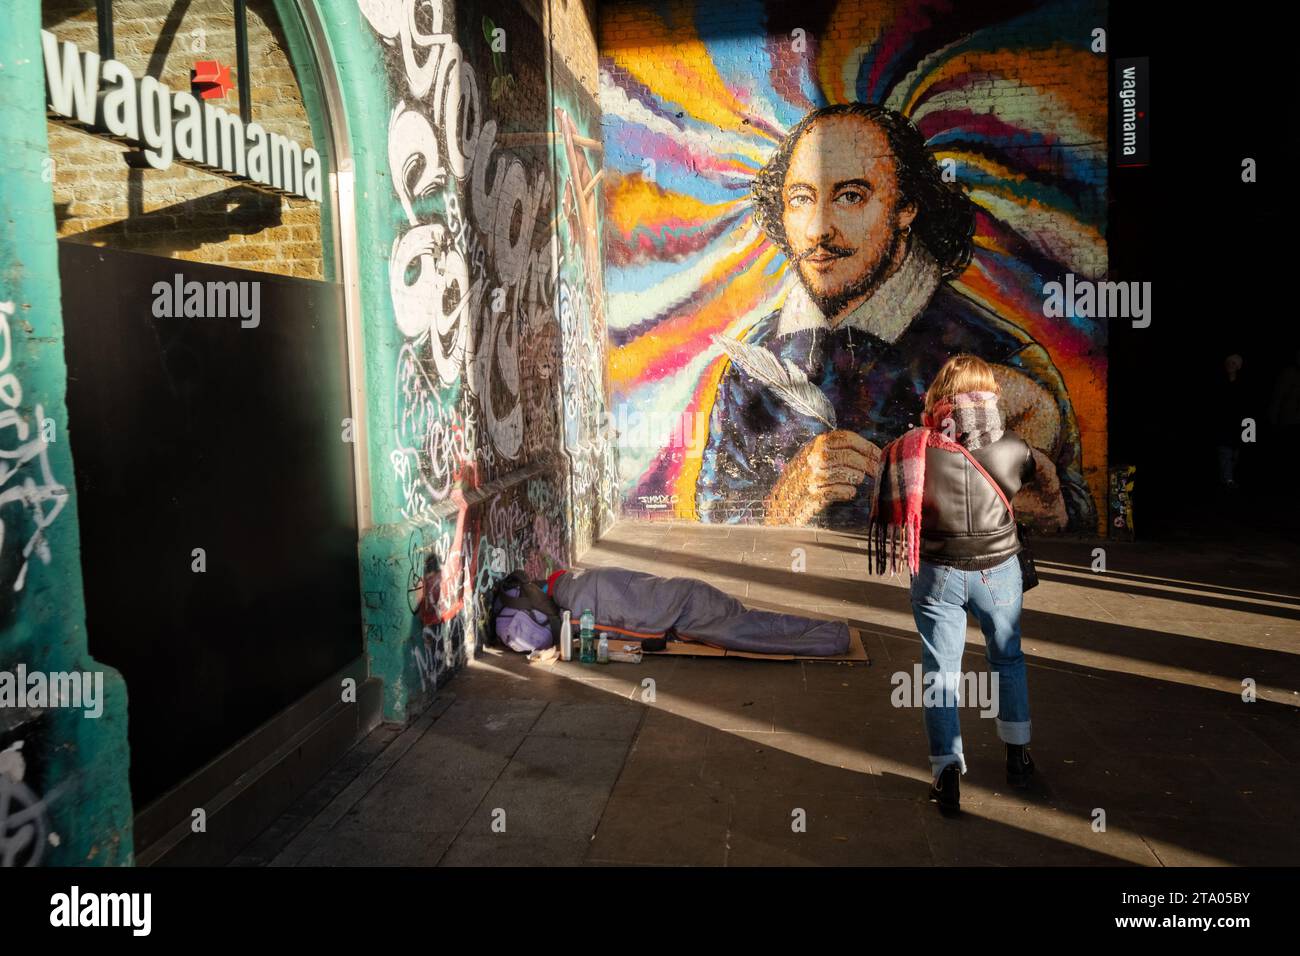 Ein Tourist, der ein großes Wandbild von William Shakespeare auf Londons Southbank fotografiert. Das Kunstwerk befindet sich an der Seite eines Wagamama Restaurants Stockfoto